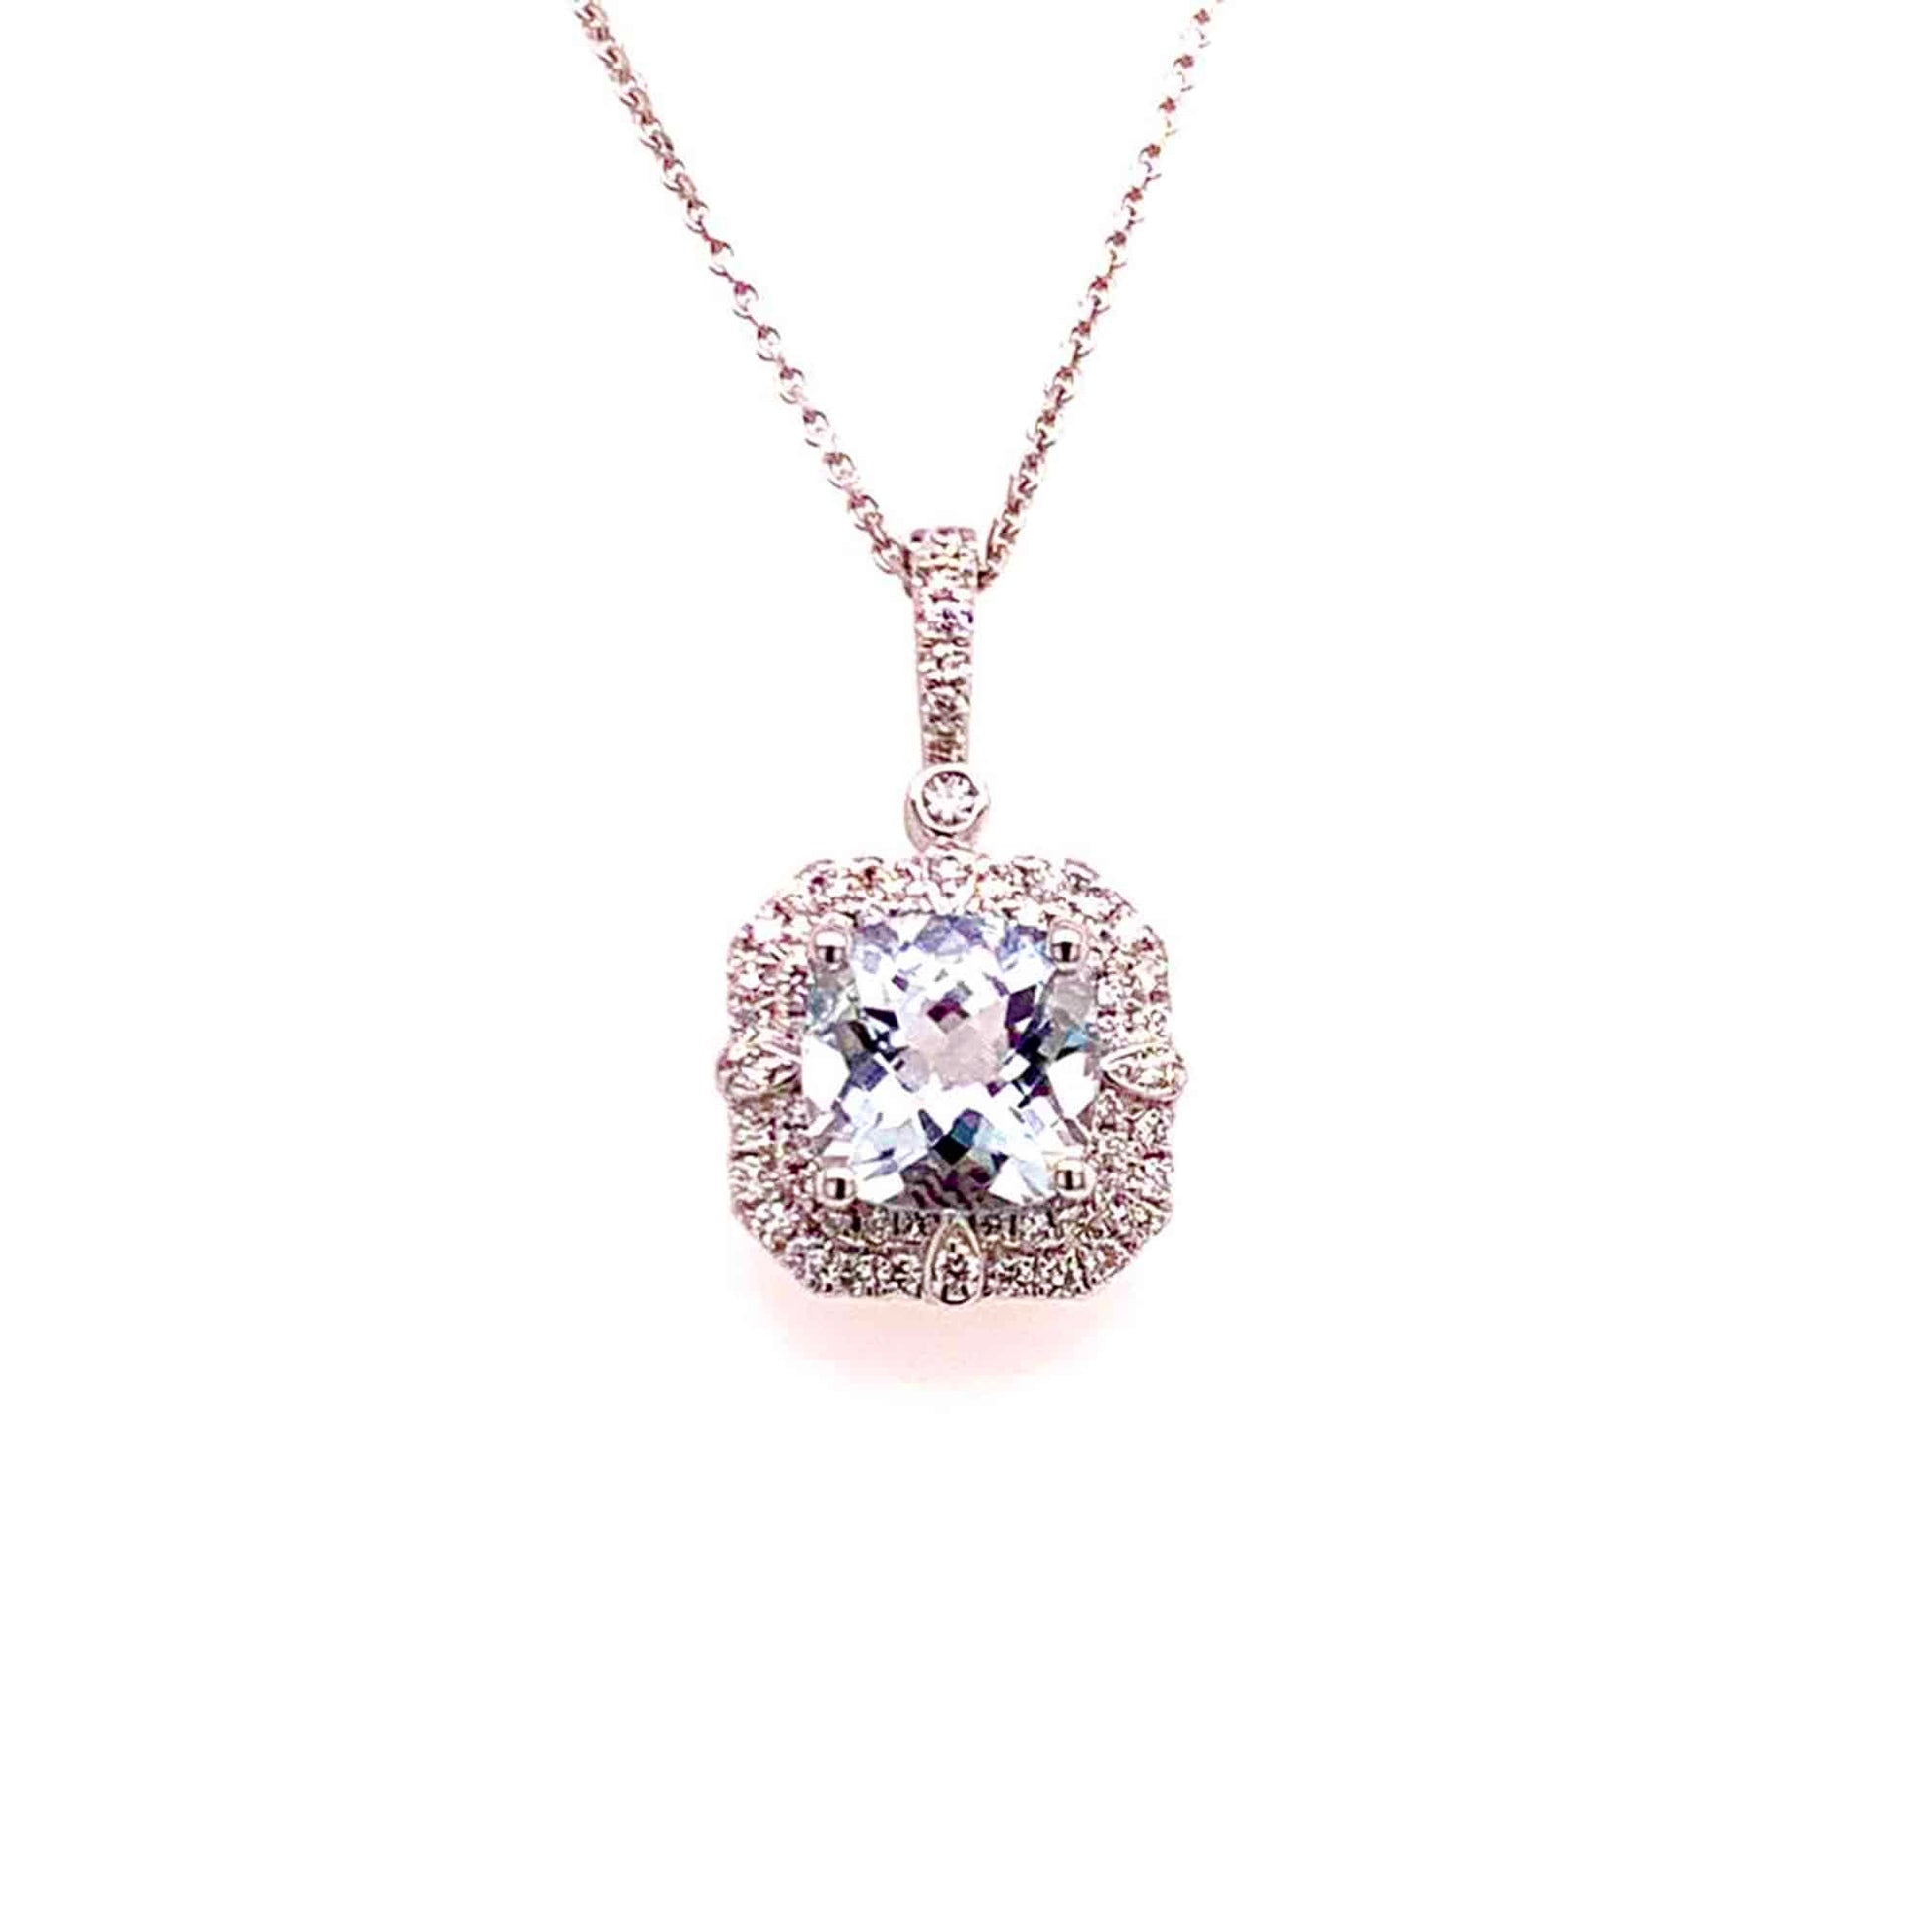 Diamond Aquamarine Necklace 18k Gold 18" 2.24 TCW Certified $3,950 920940 - Certified Fine Jewelry